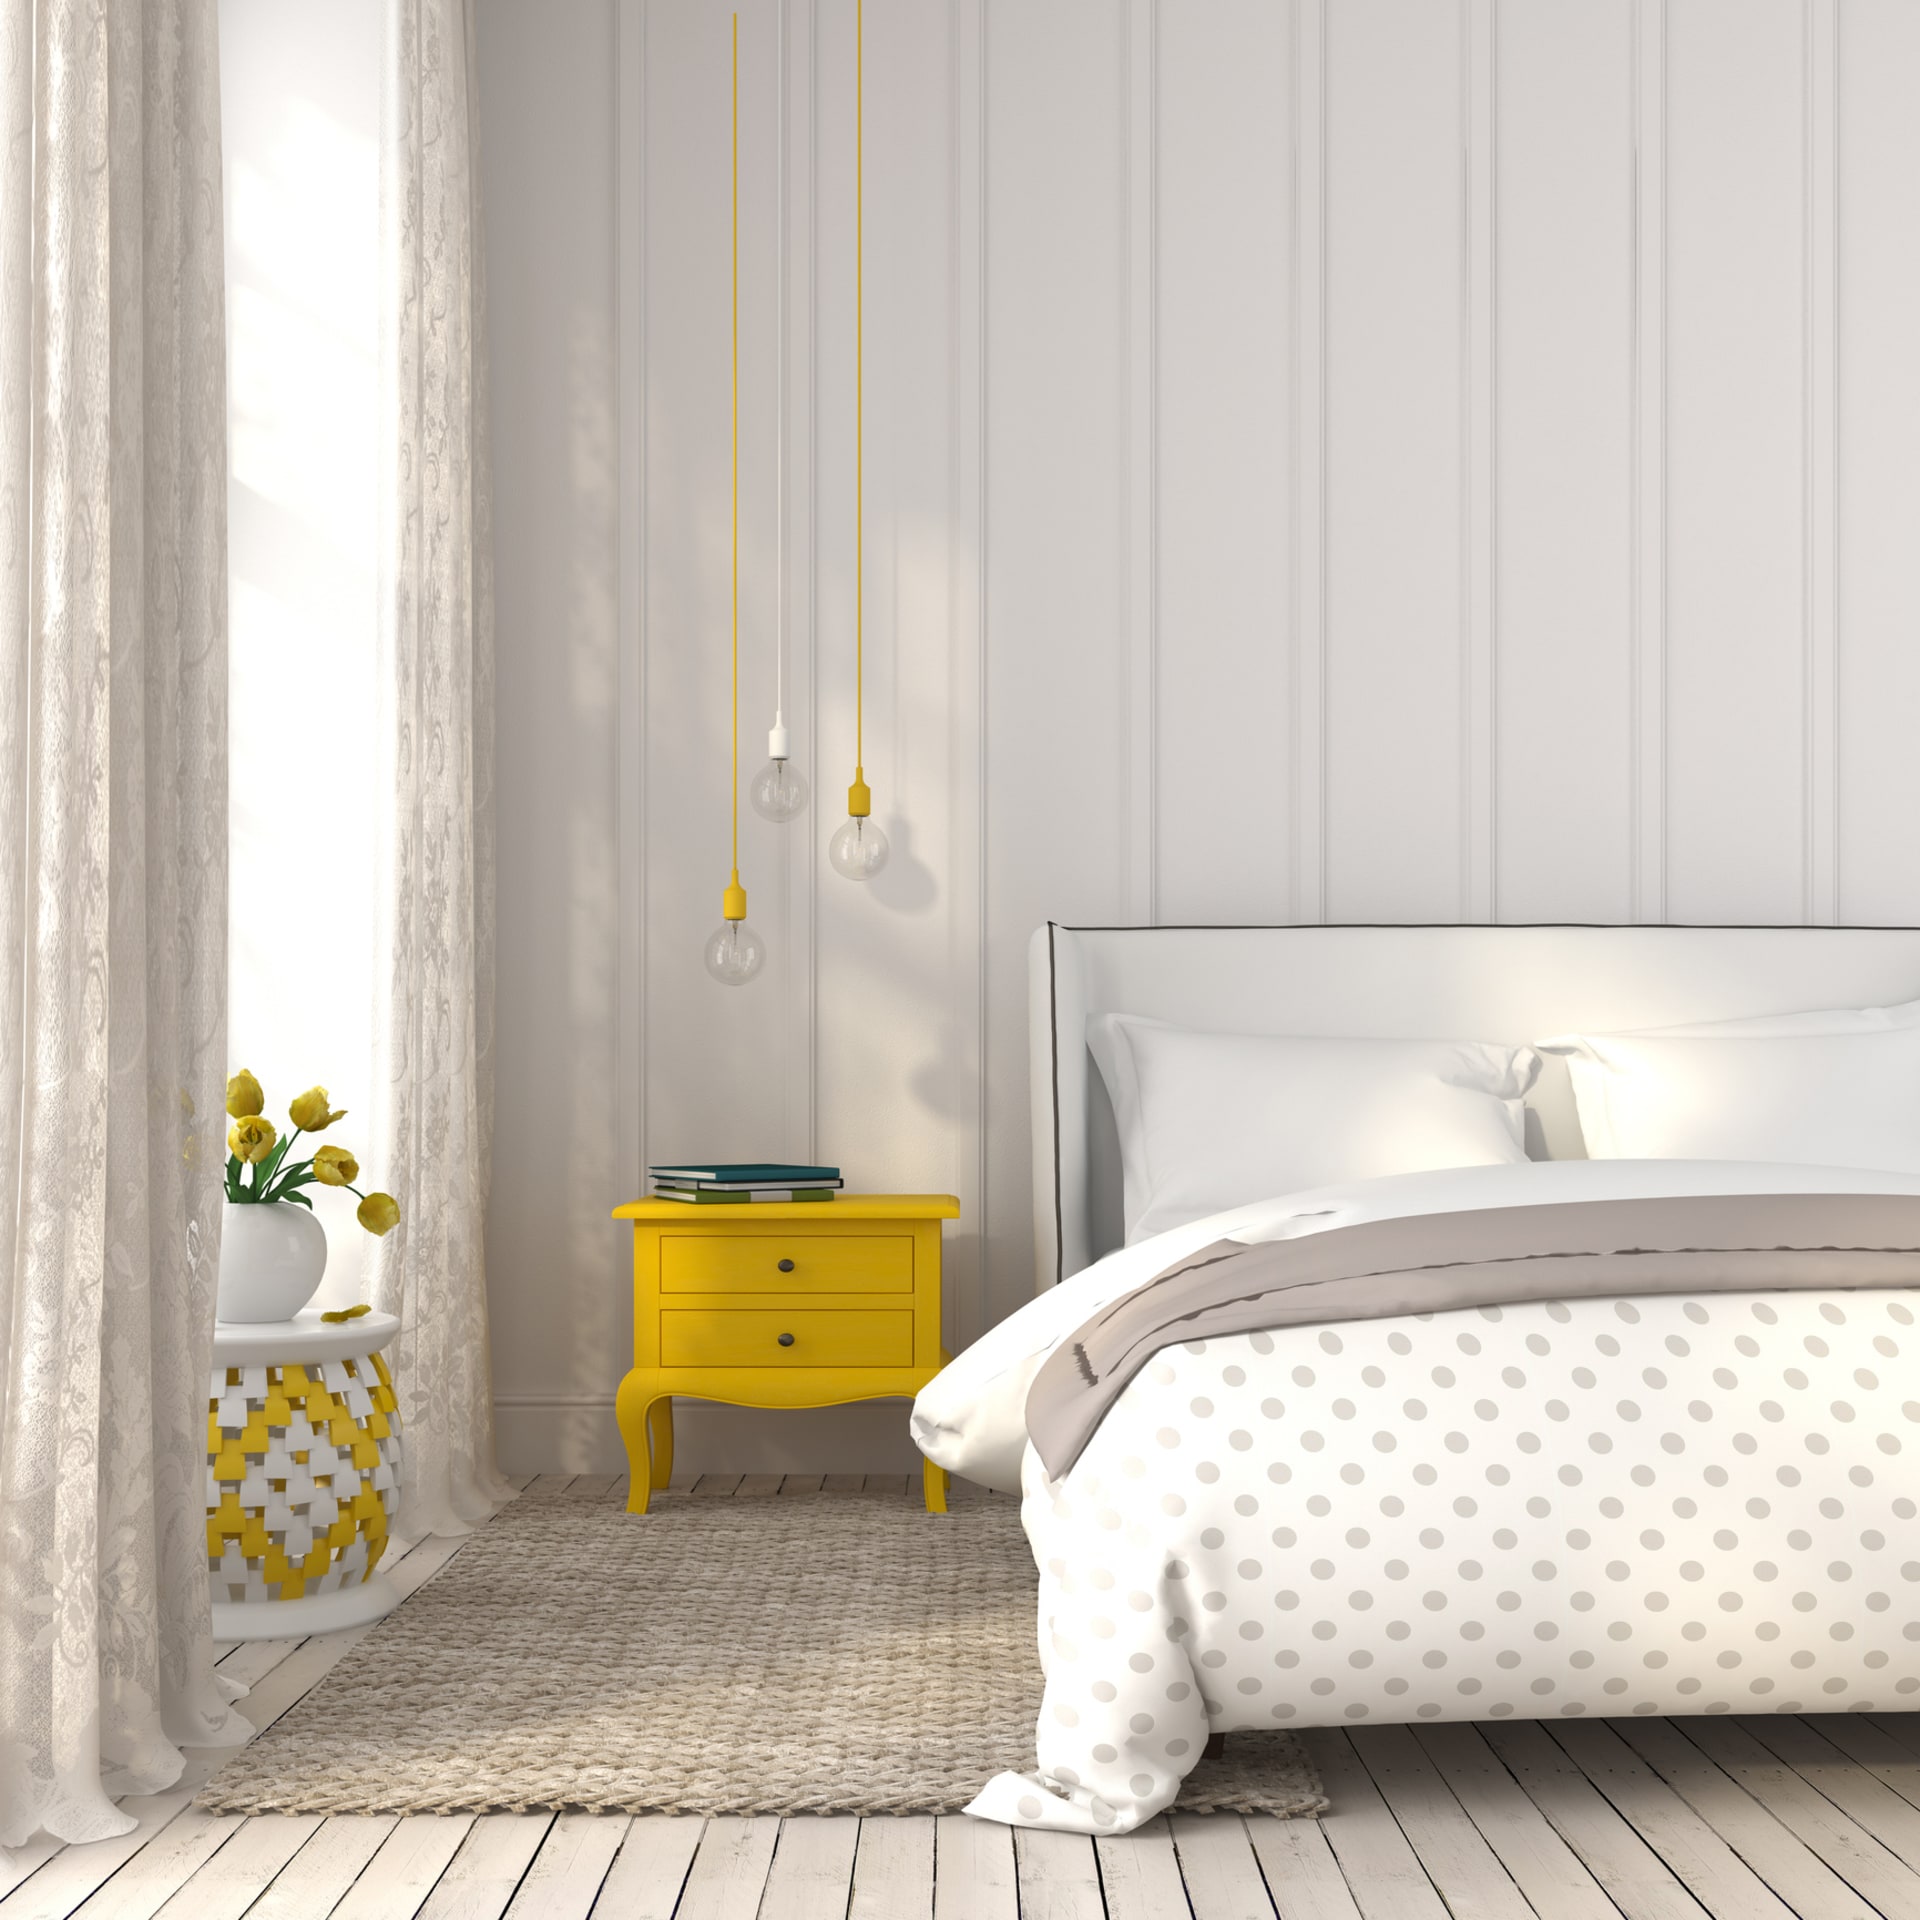 Žlutá v interiéru:  Žlutá udělá parádu zejména na menší ploše, například v podobě bytových doplňků a dekorací,.